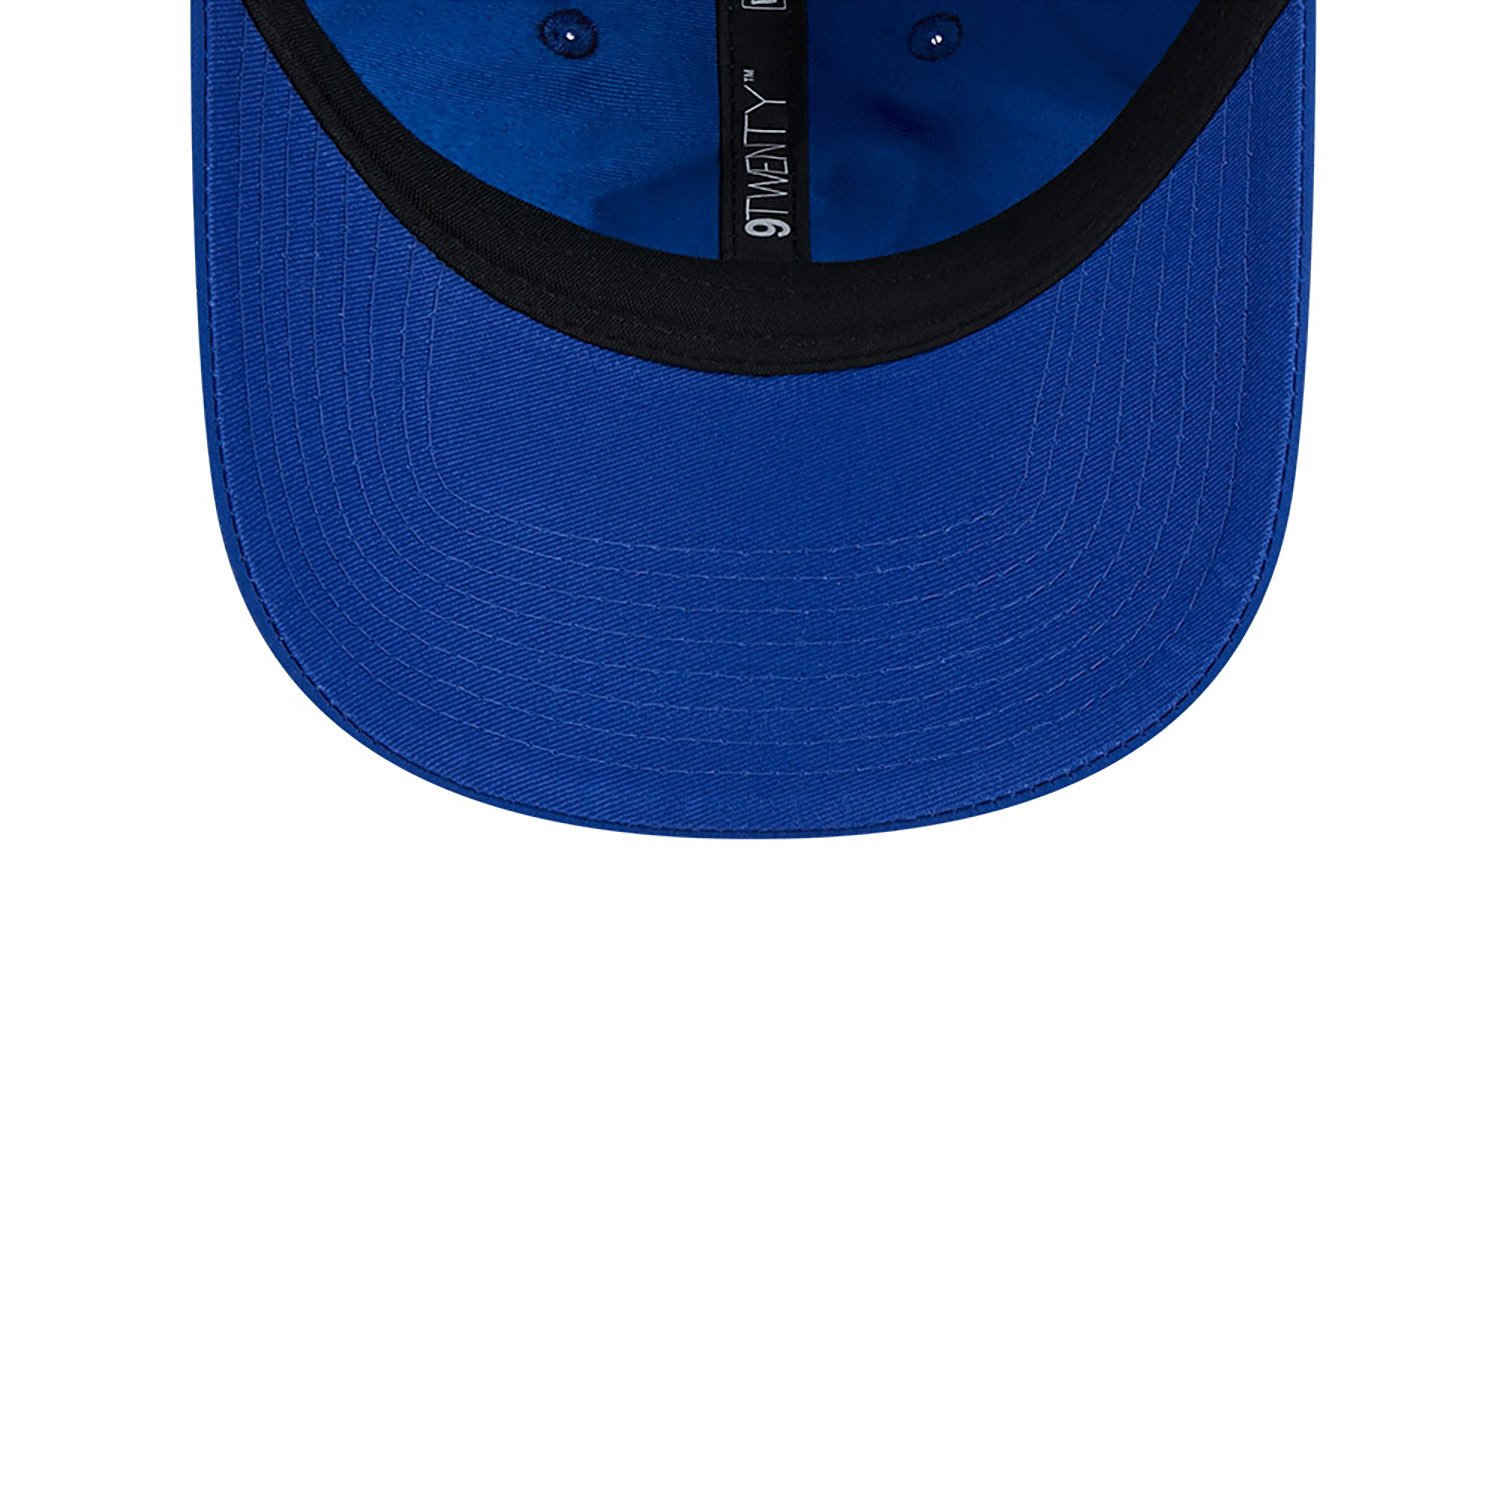 Chelsea FC Lion Crest Blue 9TWENTY Adjustable Cap